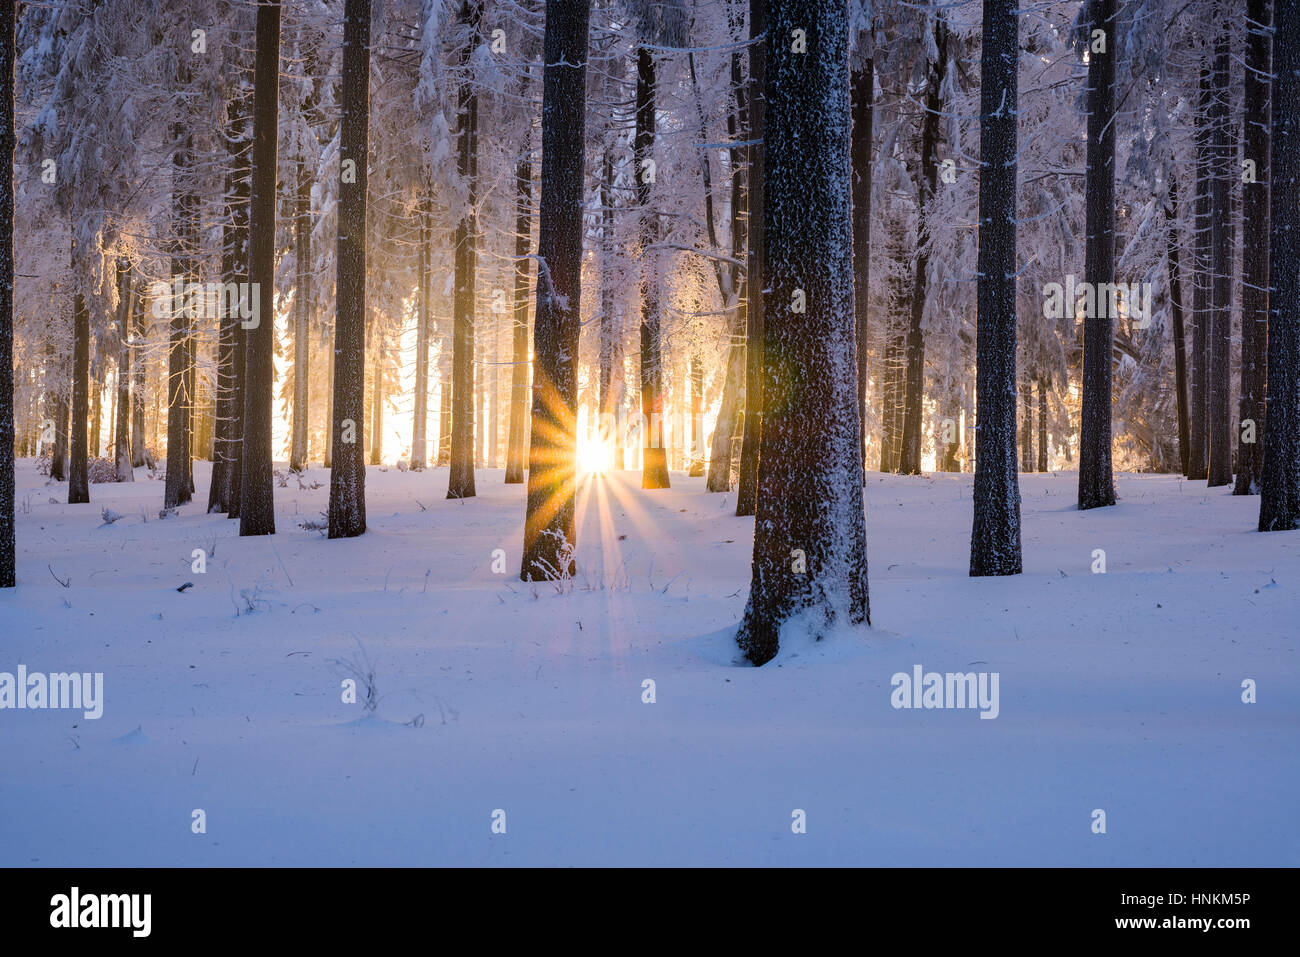 Snowy l'épinette de Norvège (Picea abies) forêt au coucher du soleil, Forêt, Thuringe, Allemagne Banque D'Images